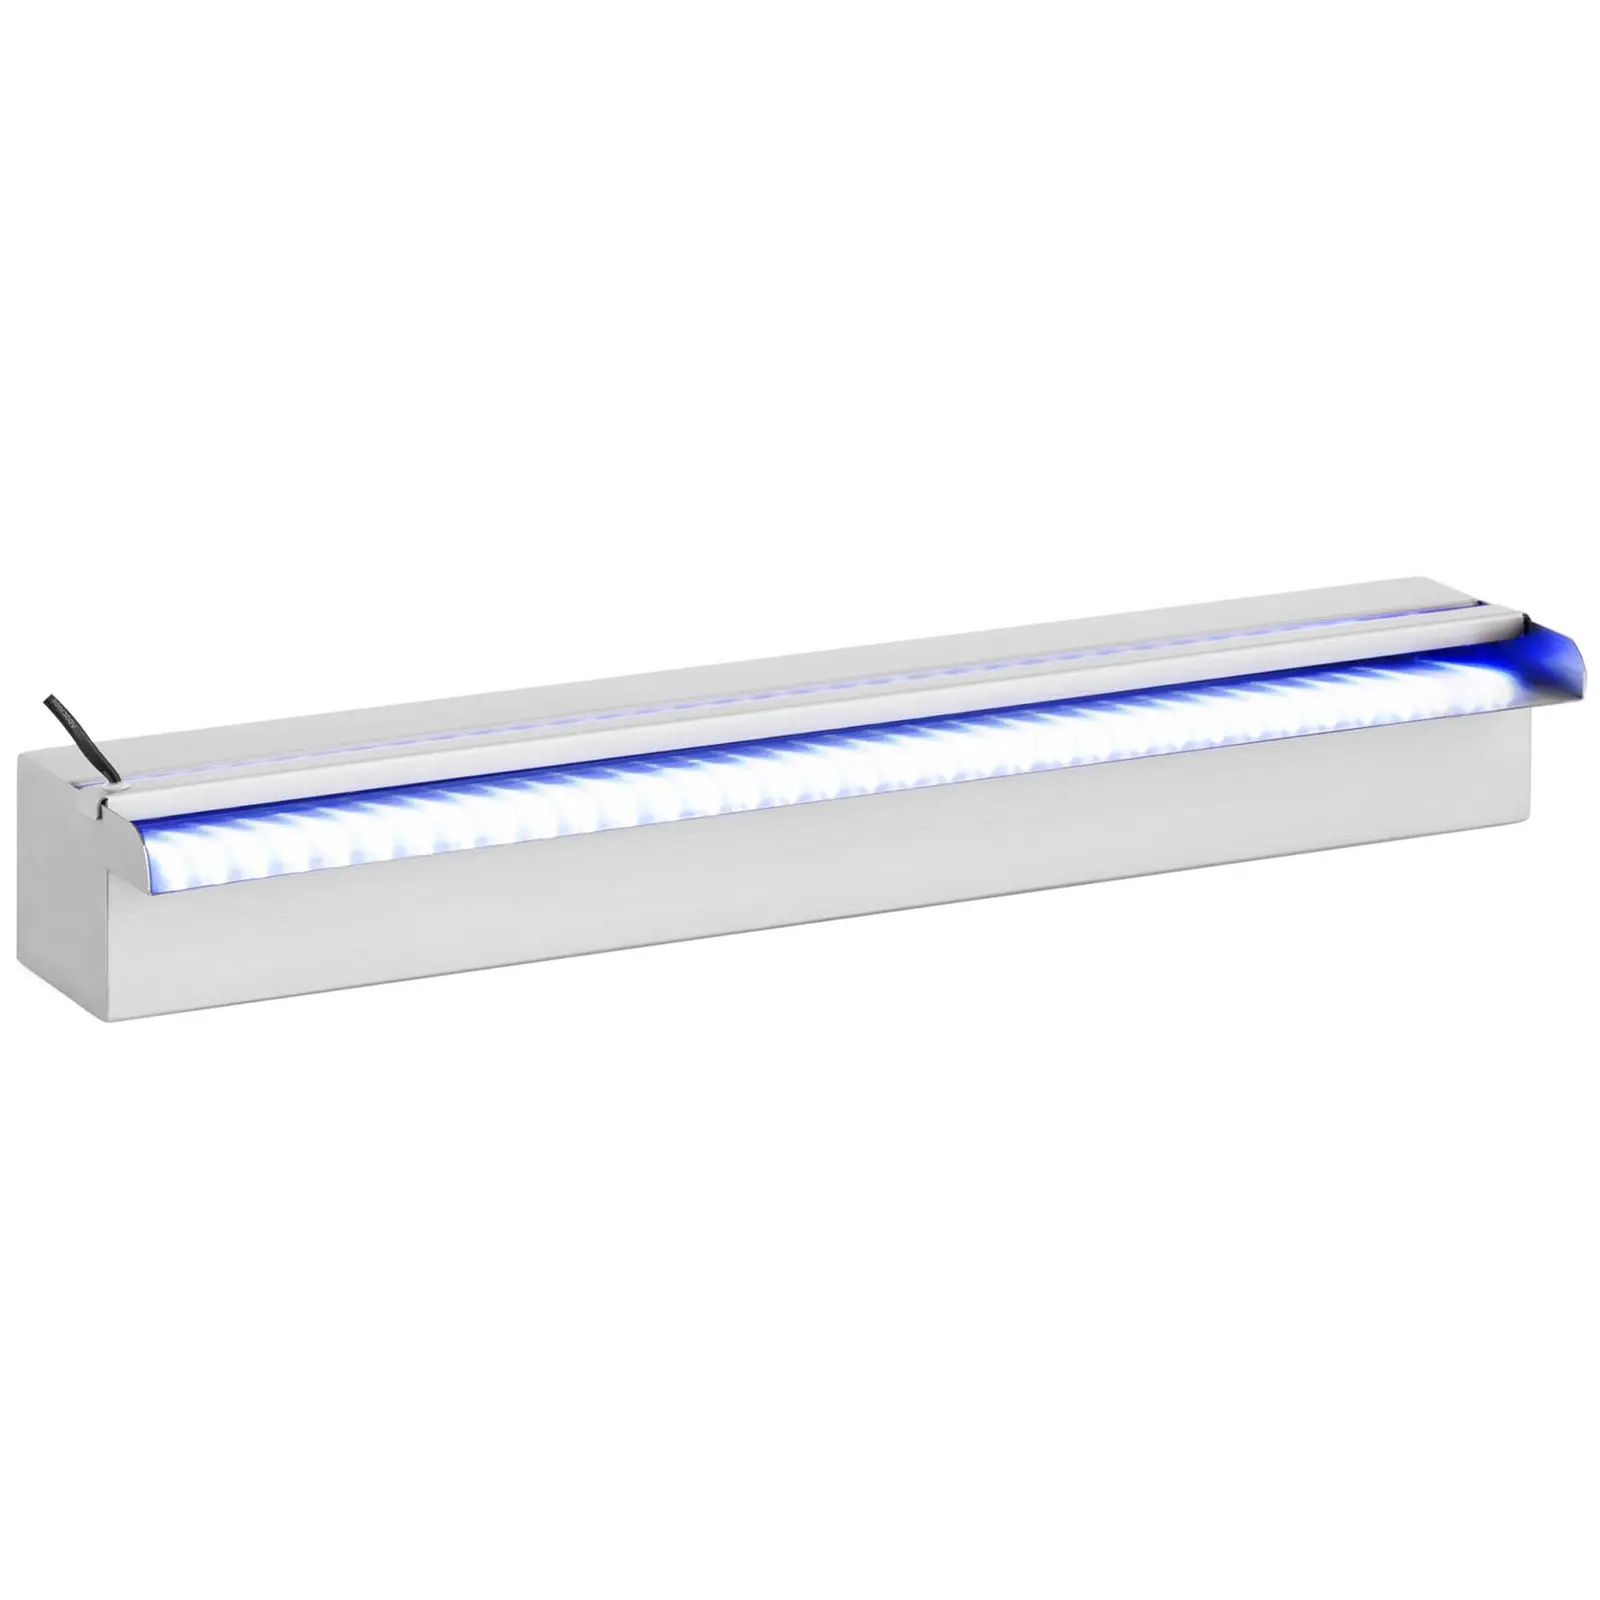 Water Spillway - 60 cm - LED lighting